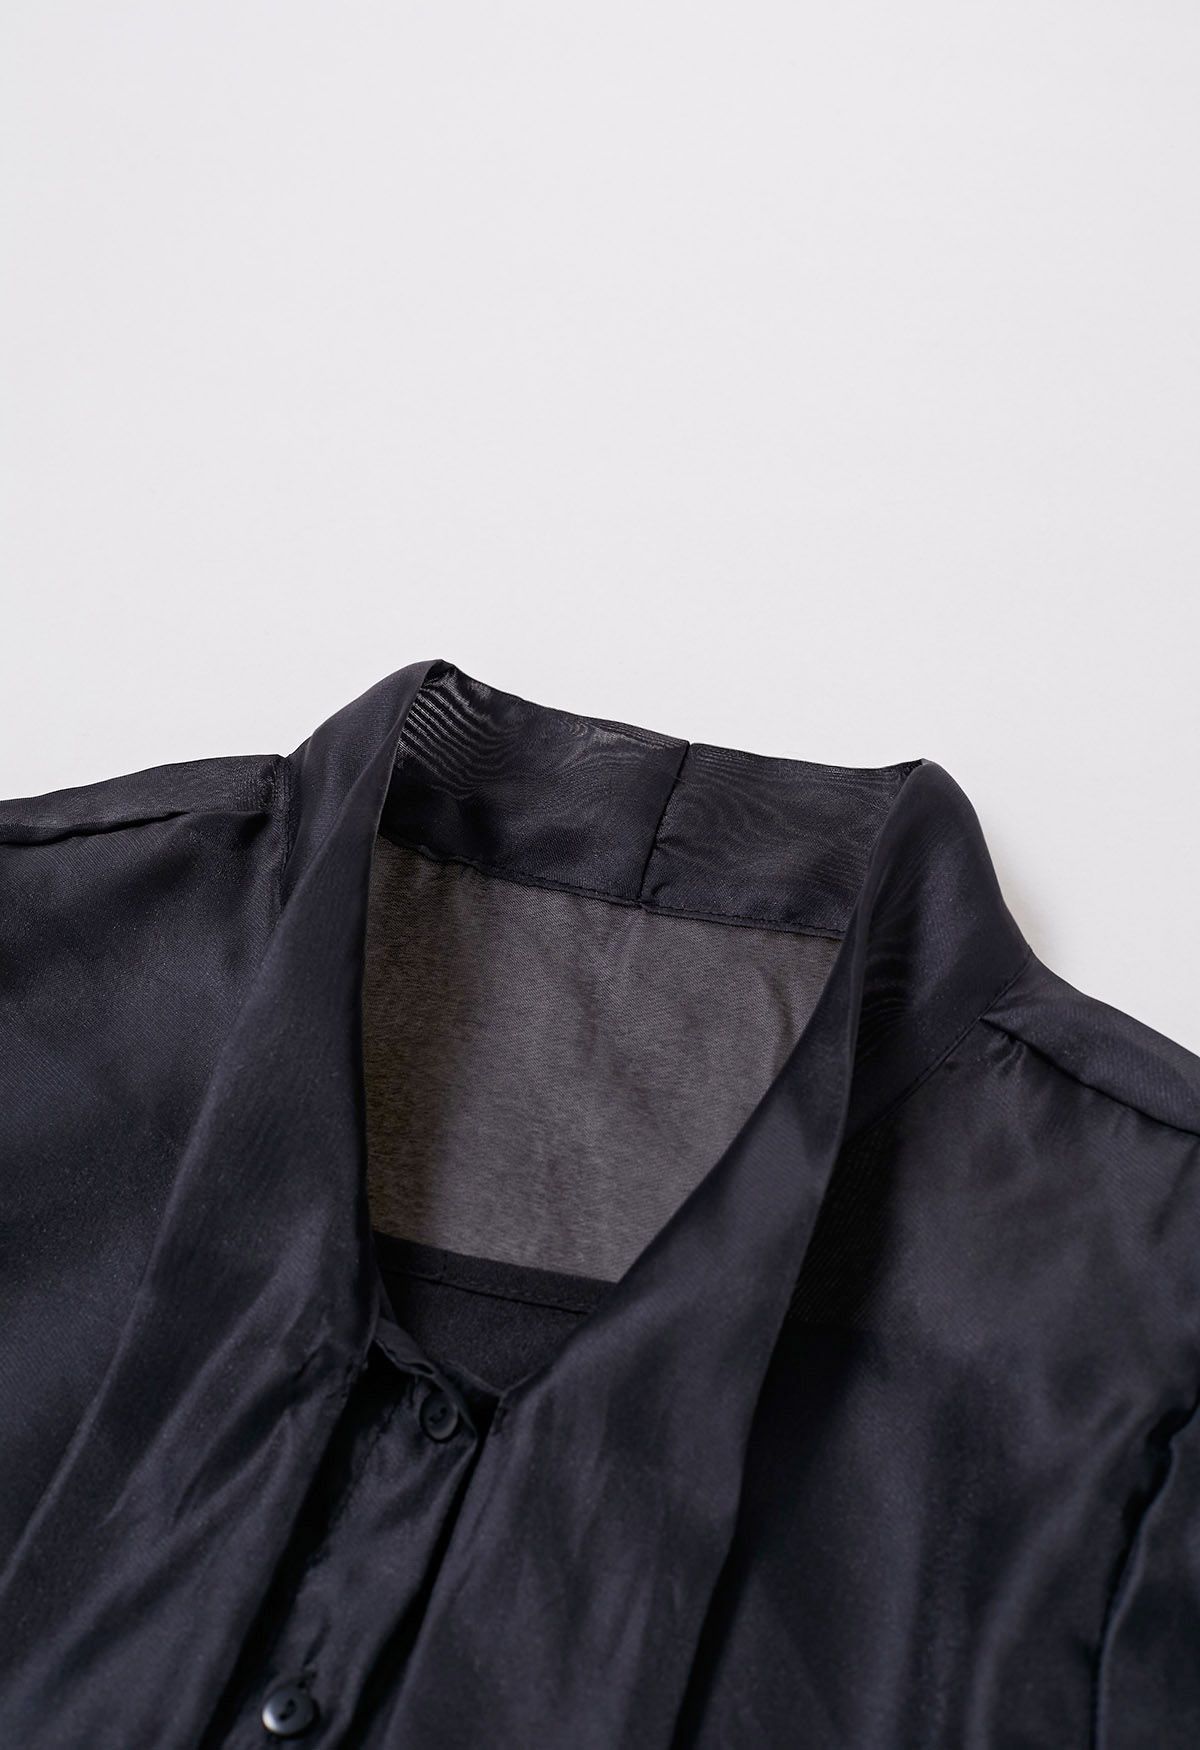 Camisa transparente elegante con mangas abullonadas y lazo en negro